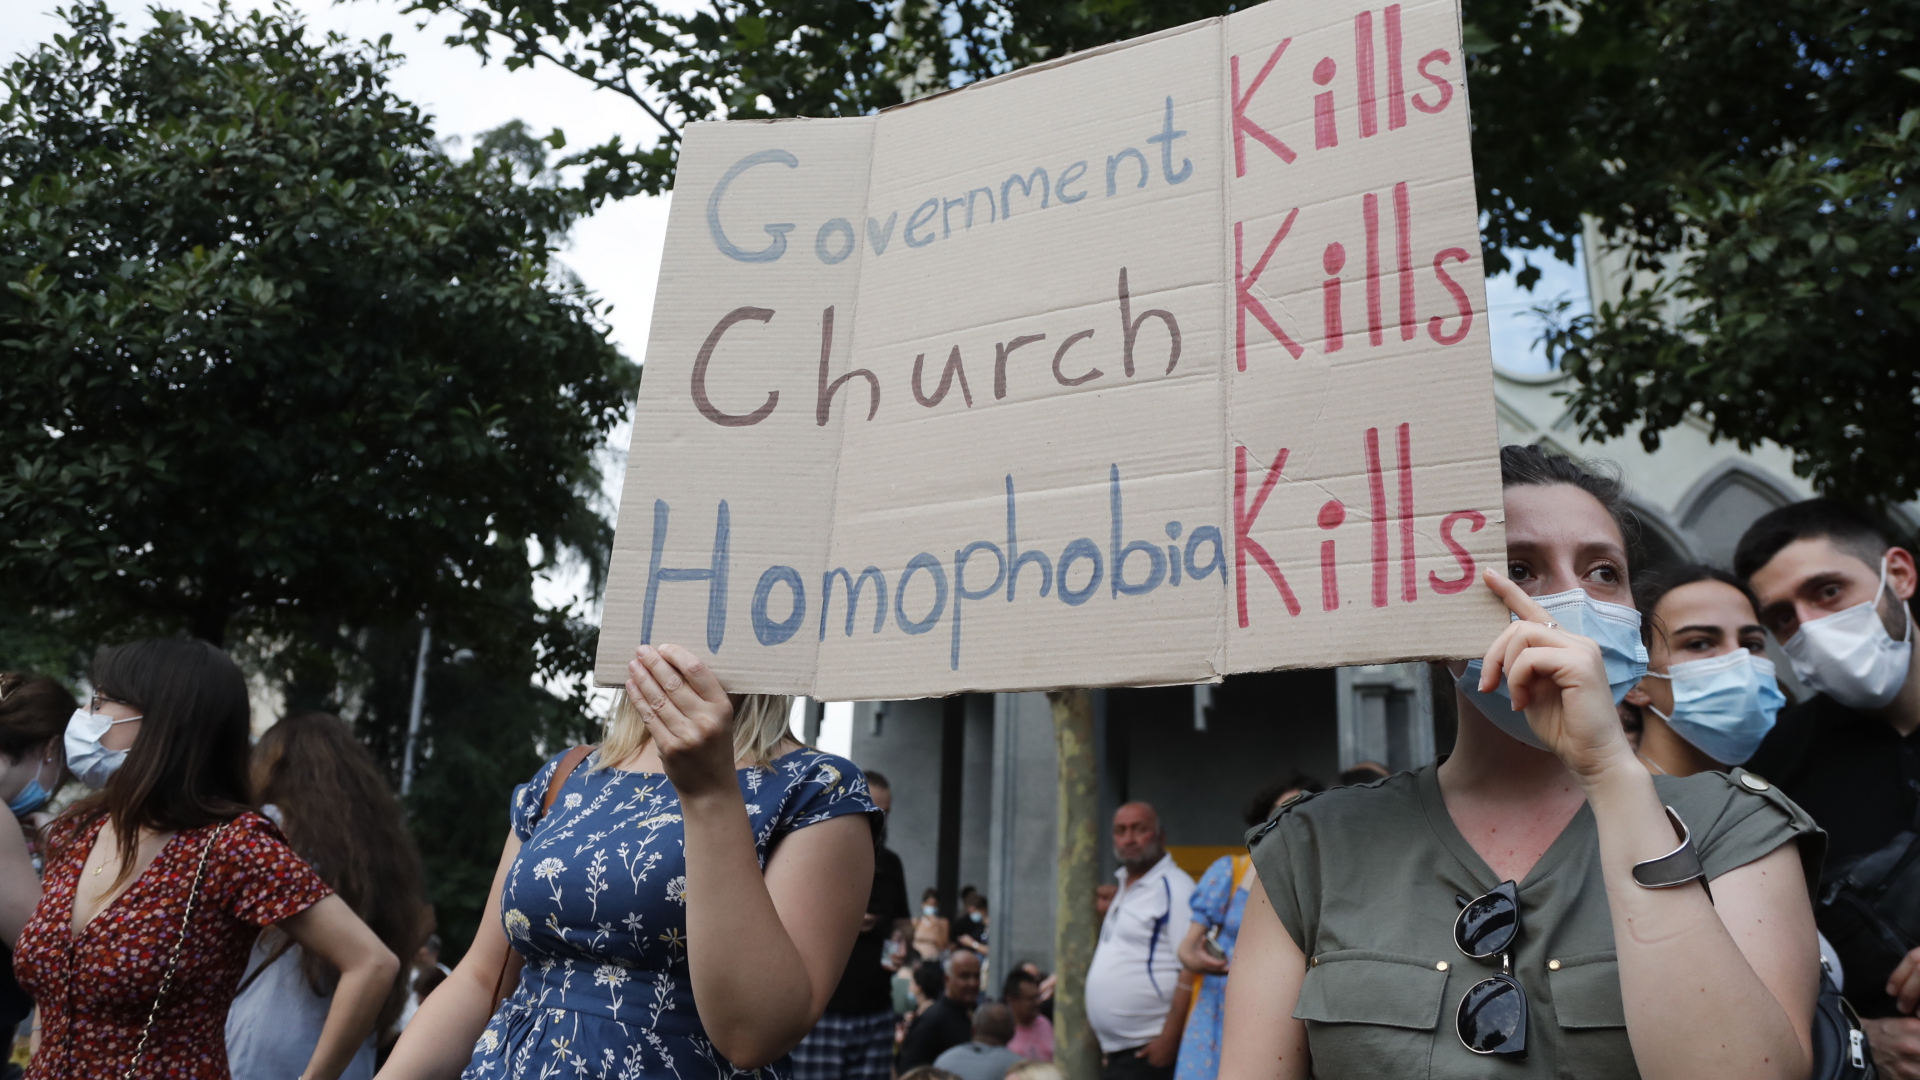 Bei einer Kundgebung gegen Gewalt in Tiflis halten zwei Frauen ein Schild: "Die Regierung tötet. Die Kirche tötet. Homophobie tötet." | EPA